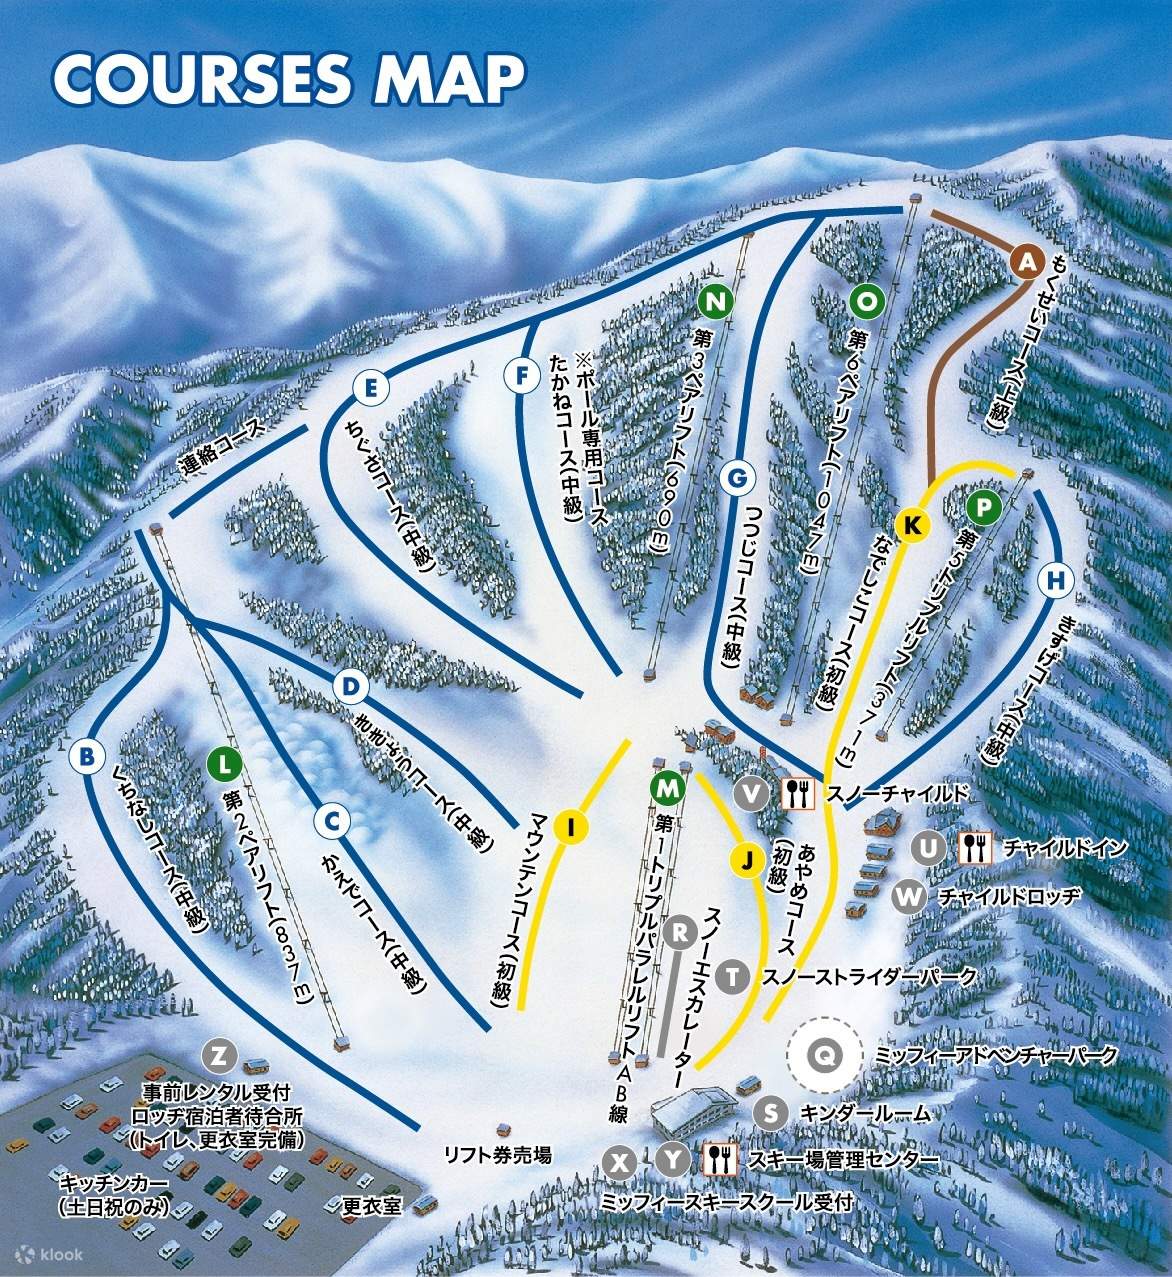 DCたんばらスキーパーク スキー場 リフト割引券 2枚 - スキー場